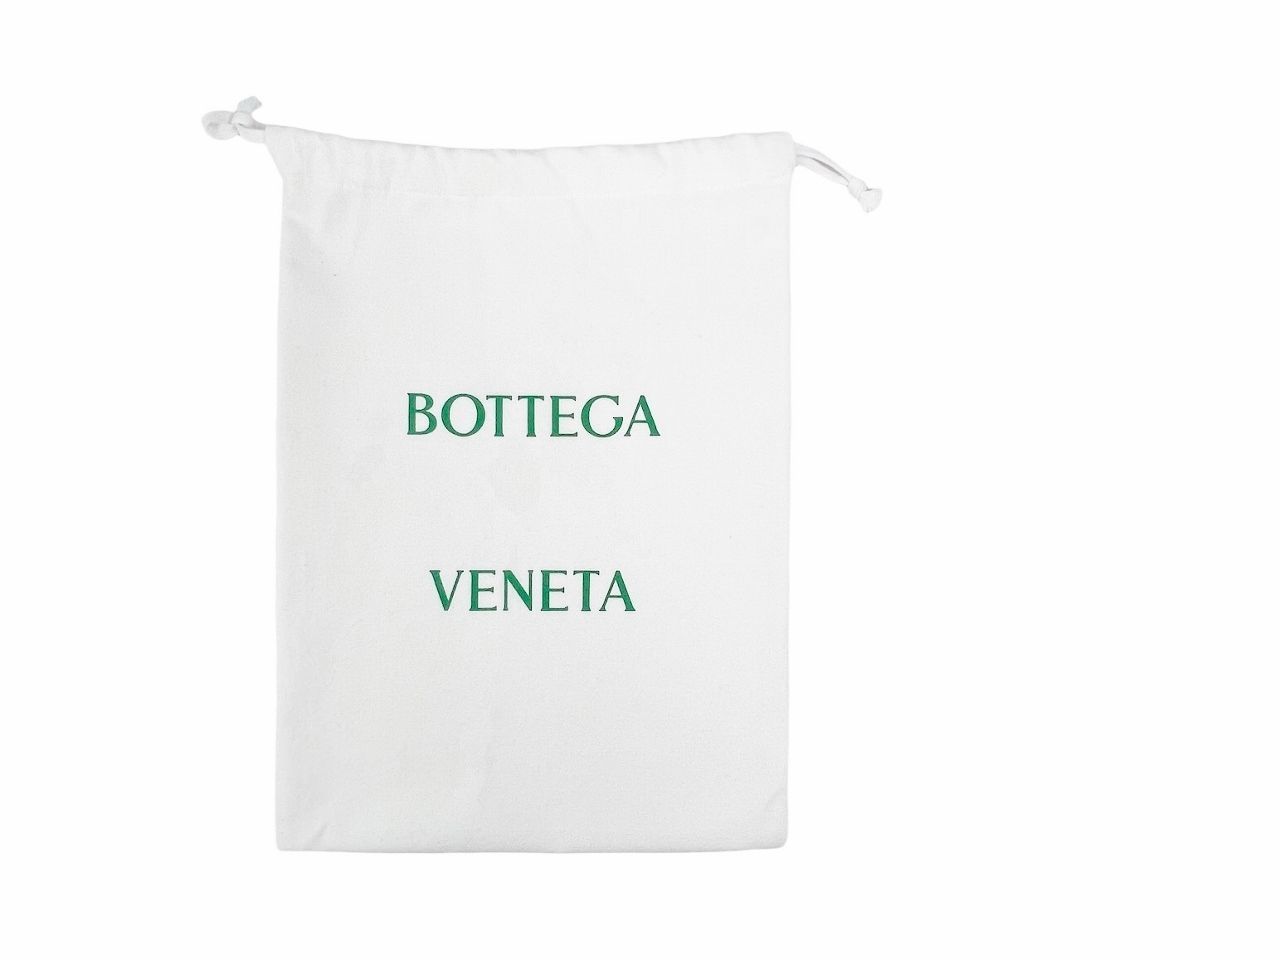 BOTTEGA VENETA ボッテガ ヴェネタ BAG ショルダー ストラップ